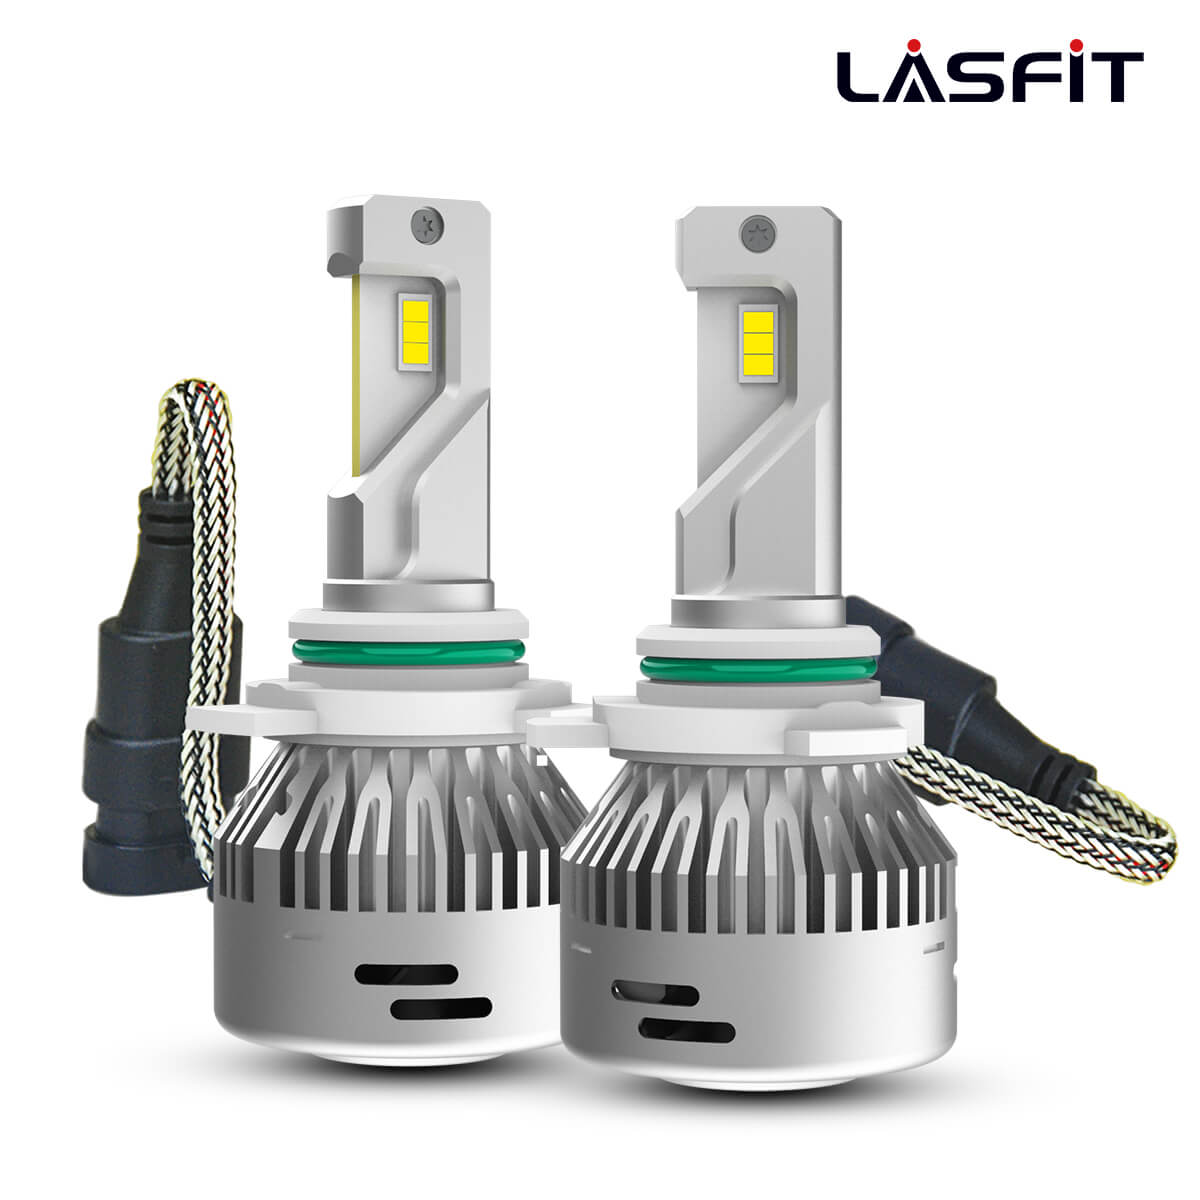 Ampoules de phares à LED 9012 / HIR2 série Perfect Fit 8000 Lumens